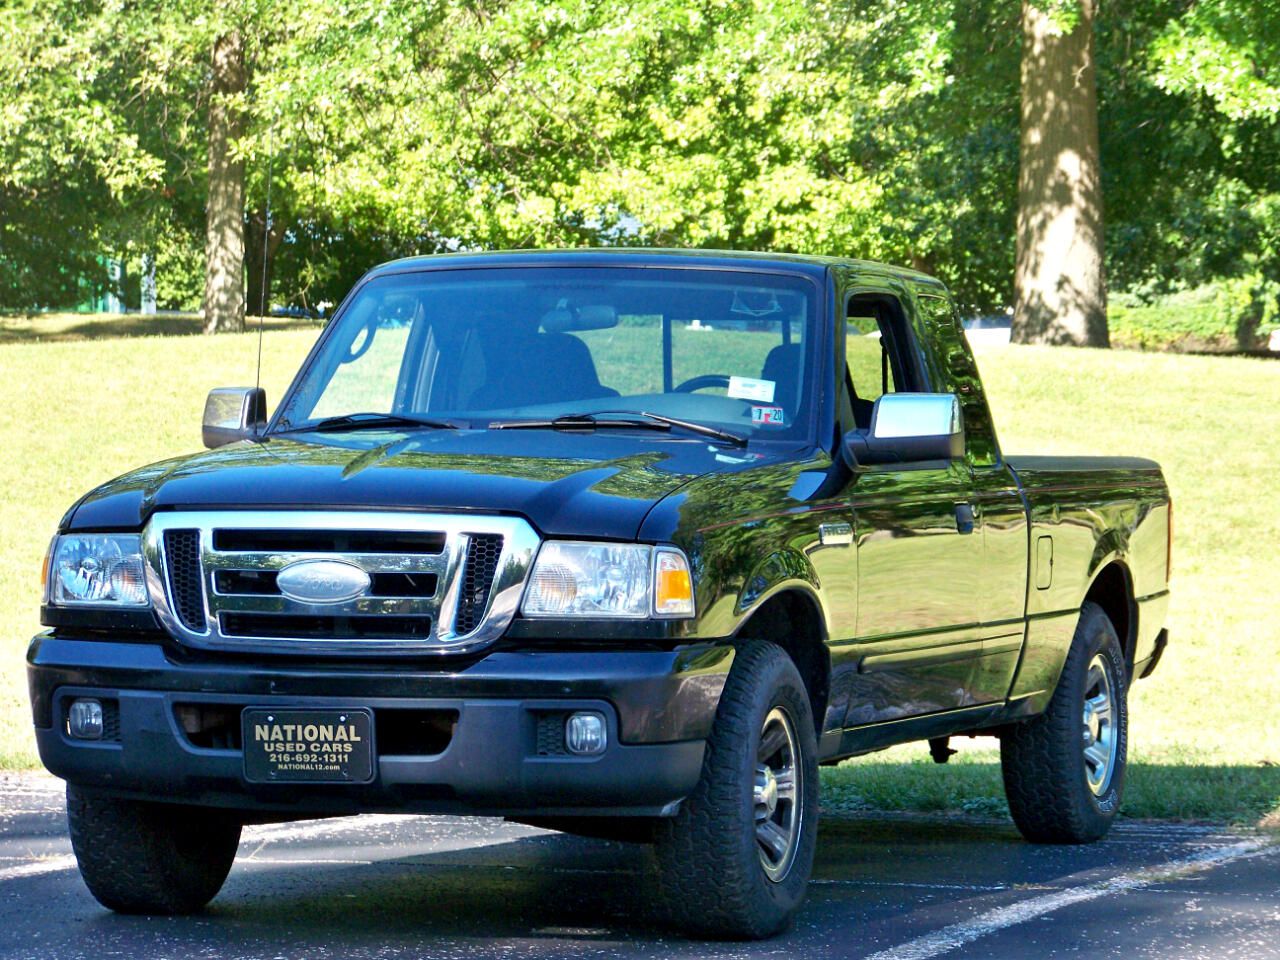 2006 Ford Ranger